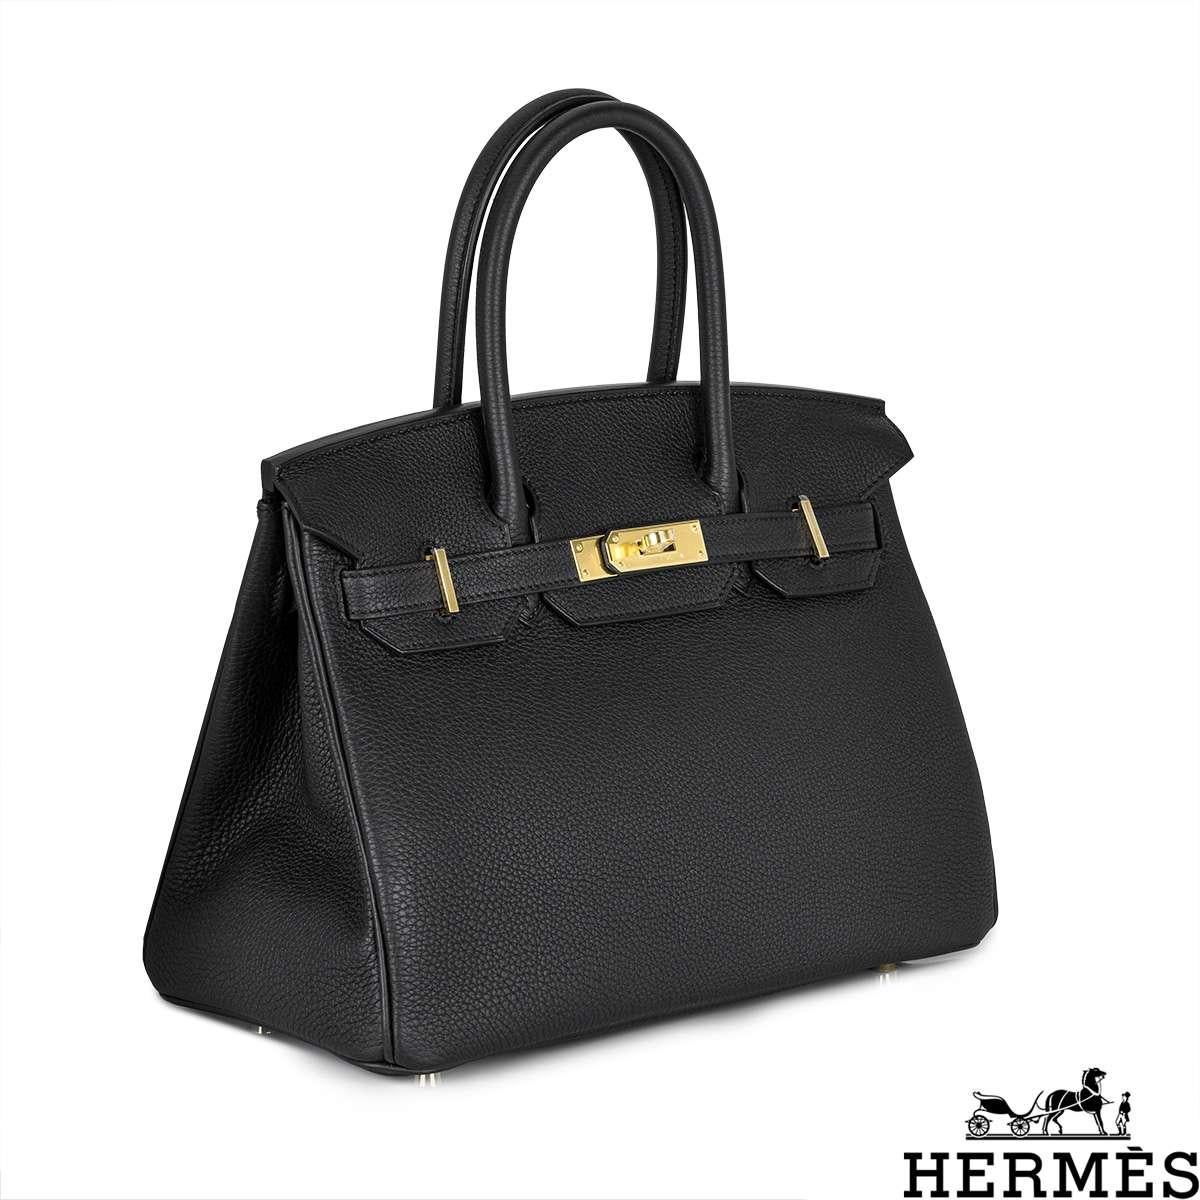 Women's or Men's Hermès Birkin 30cm Noir Veau Togo GHW